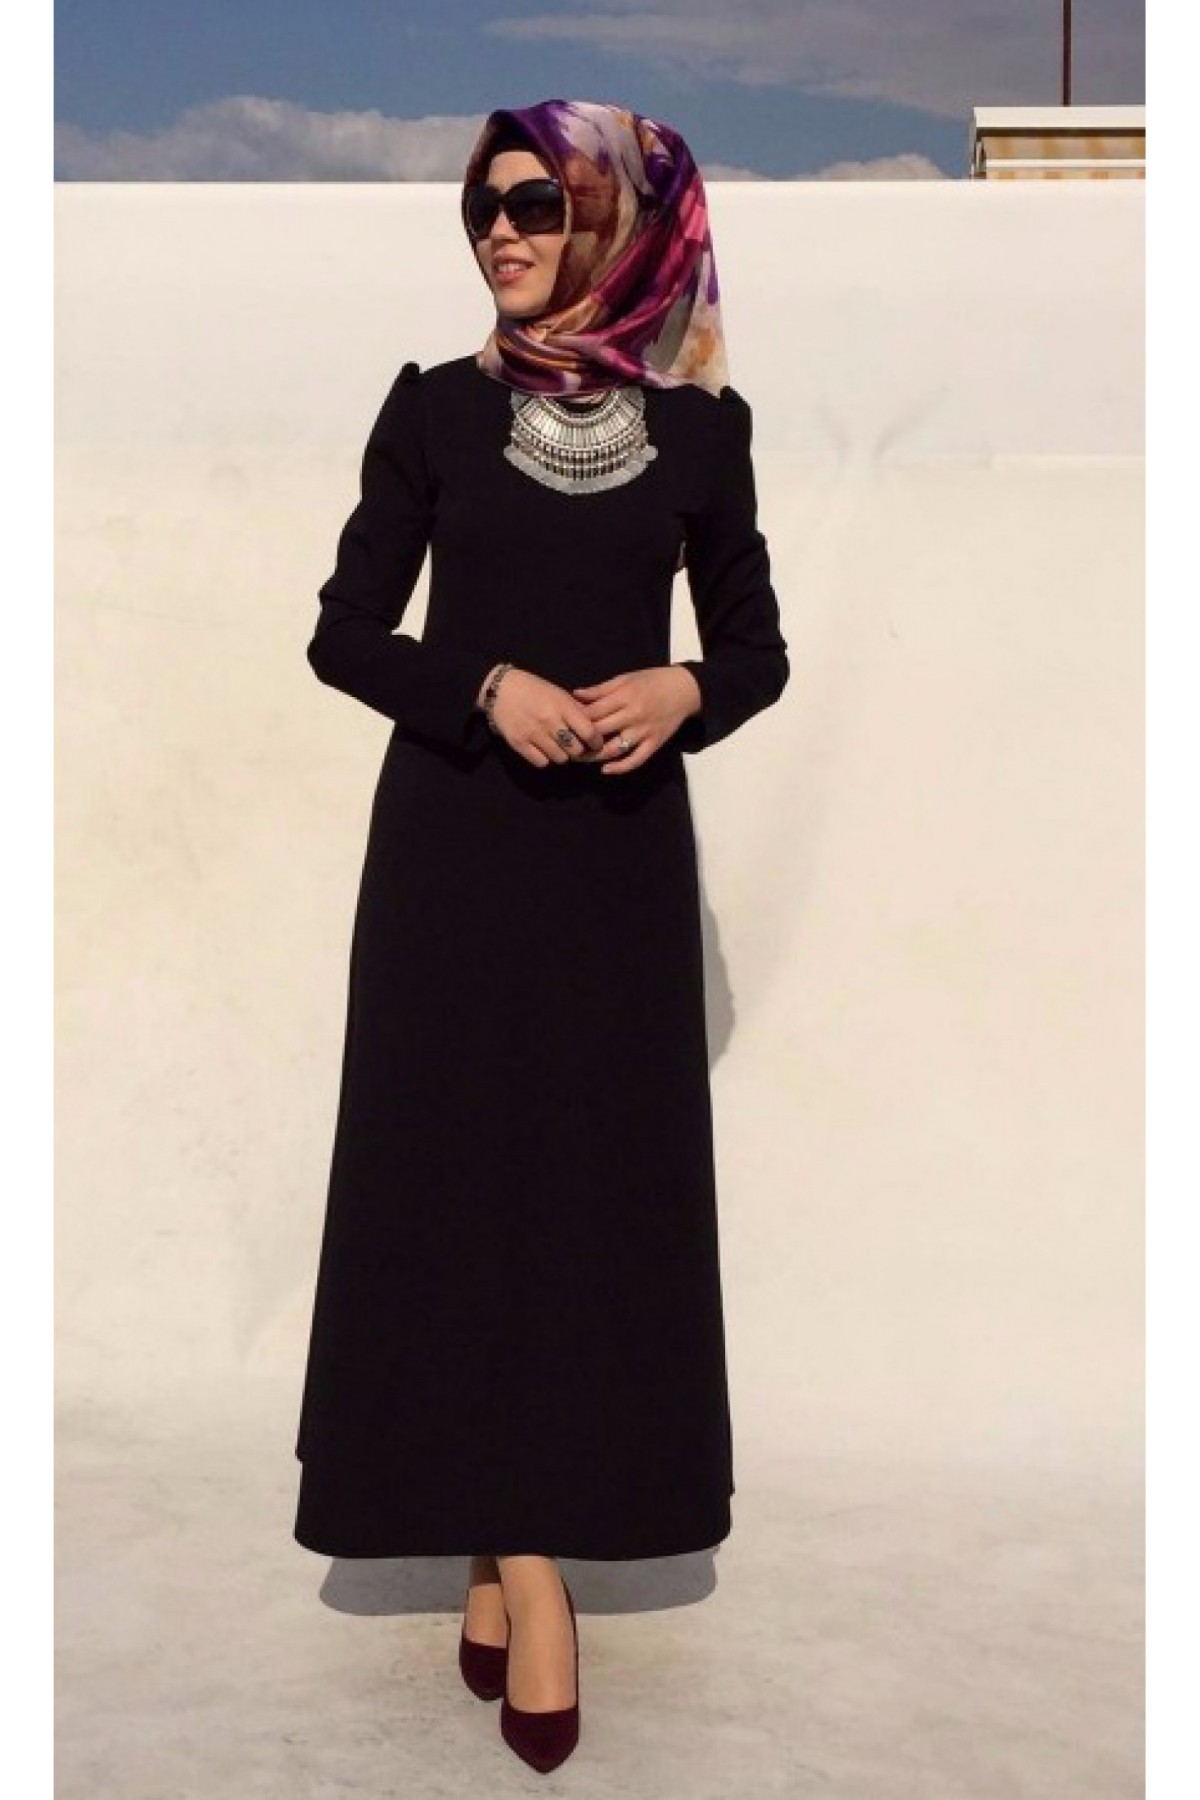 Rabia Şamlı - Elit Elbise - Siyah